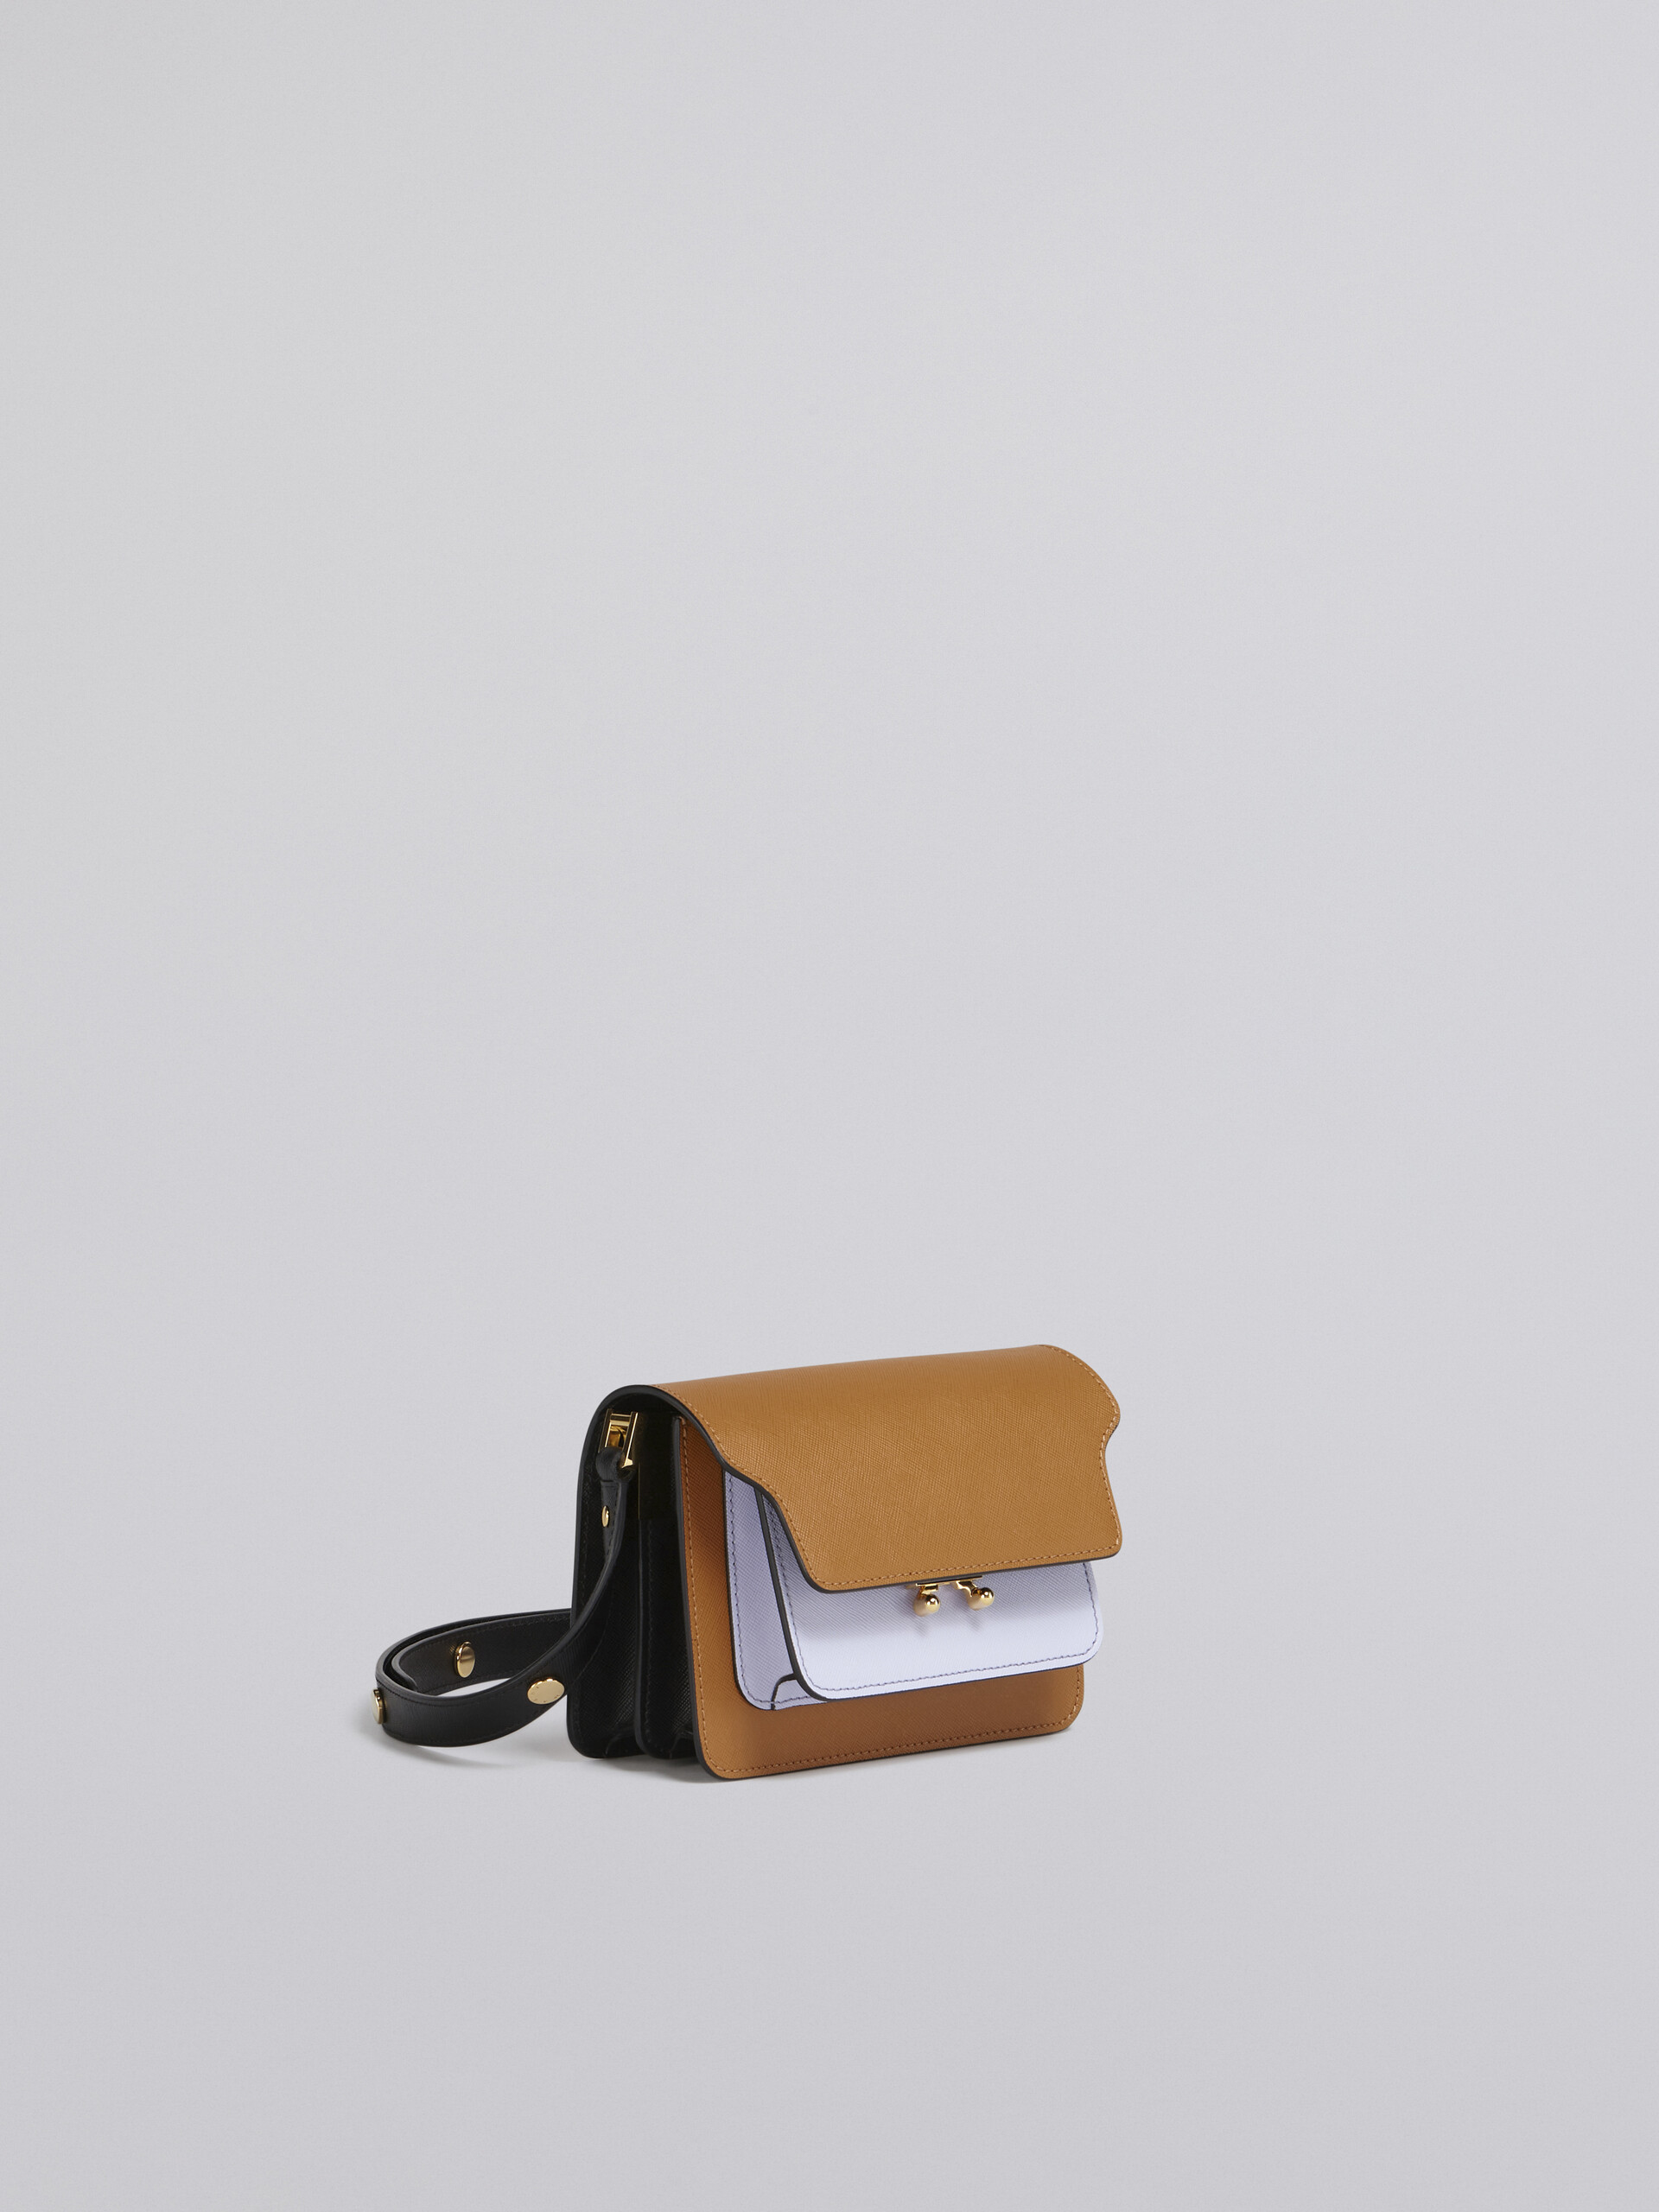 Mini sac TRUNK en cuir saffiano marron, lilas et noir - Sacs portés épaule - Image 6